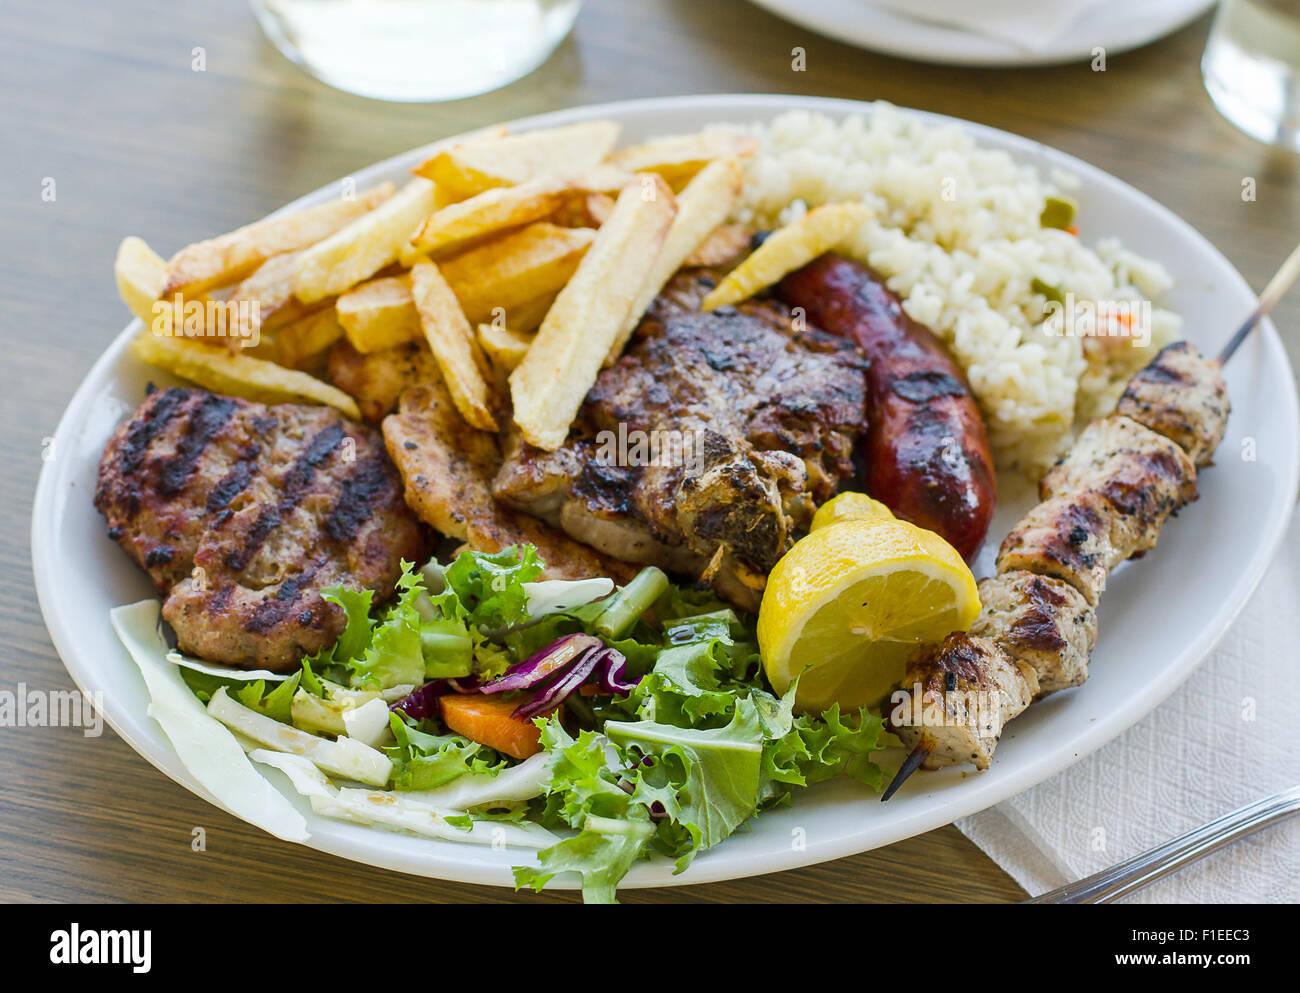 Mélanger la viande avec la plaque de frites, la nourriture grecque Banque D'Images